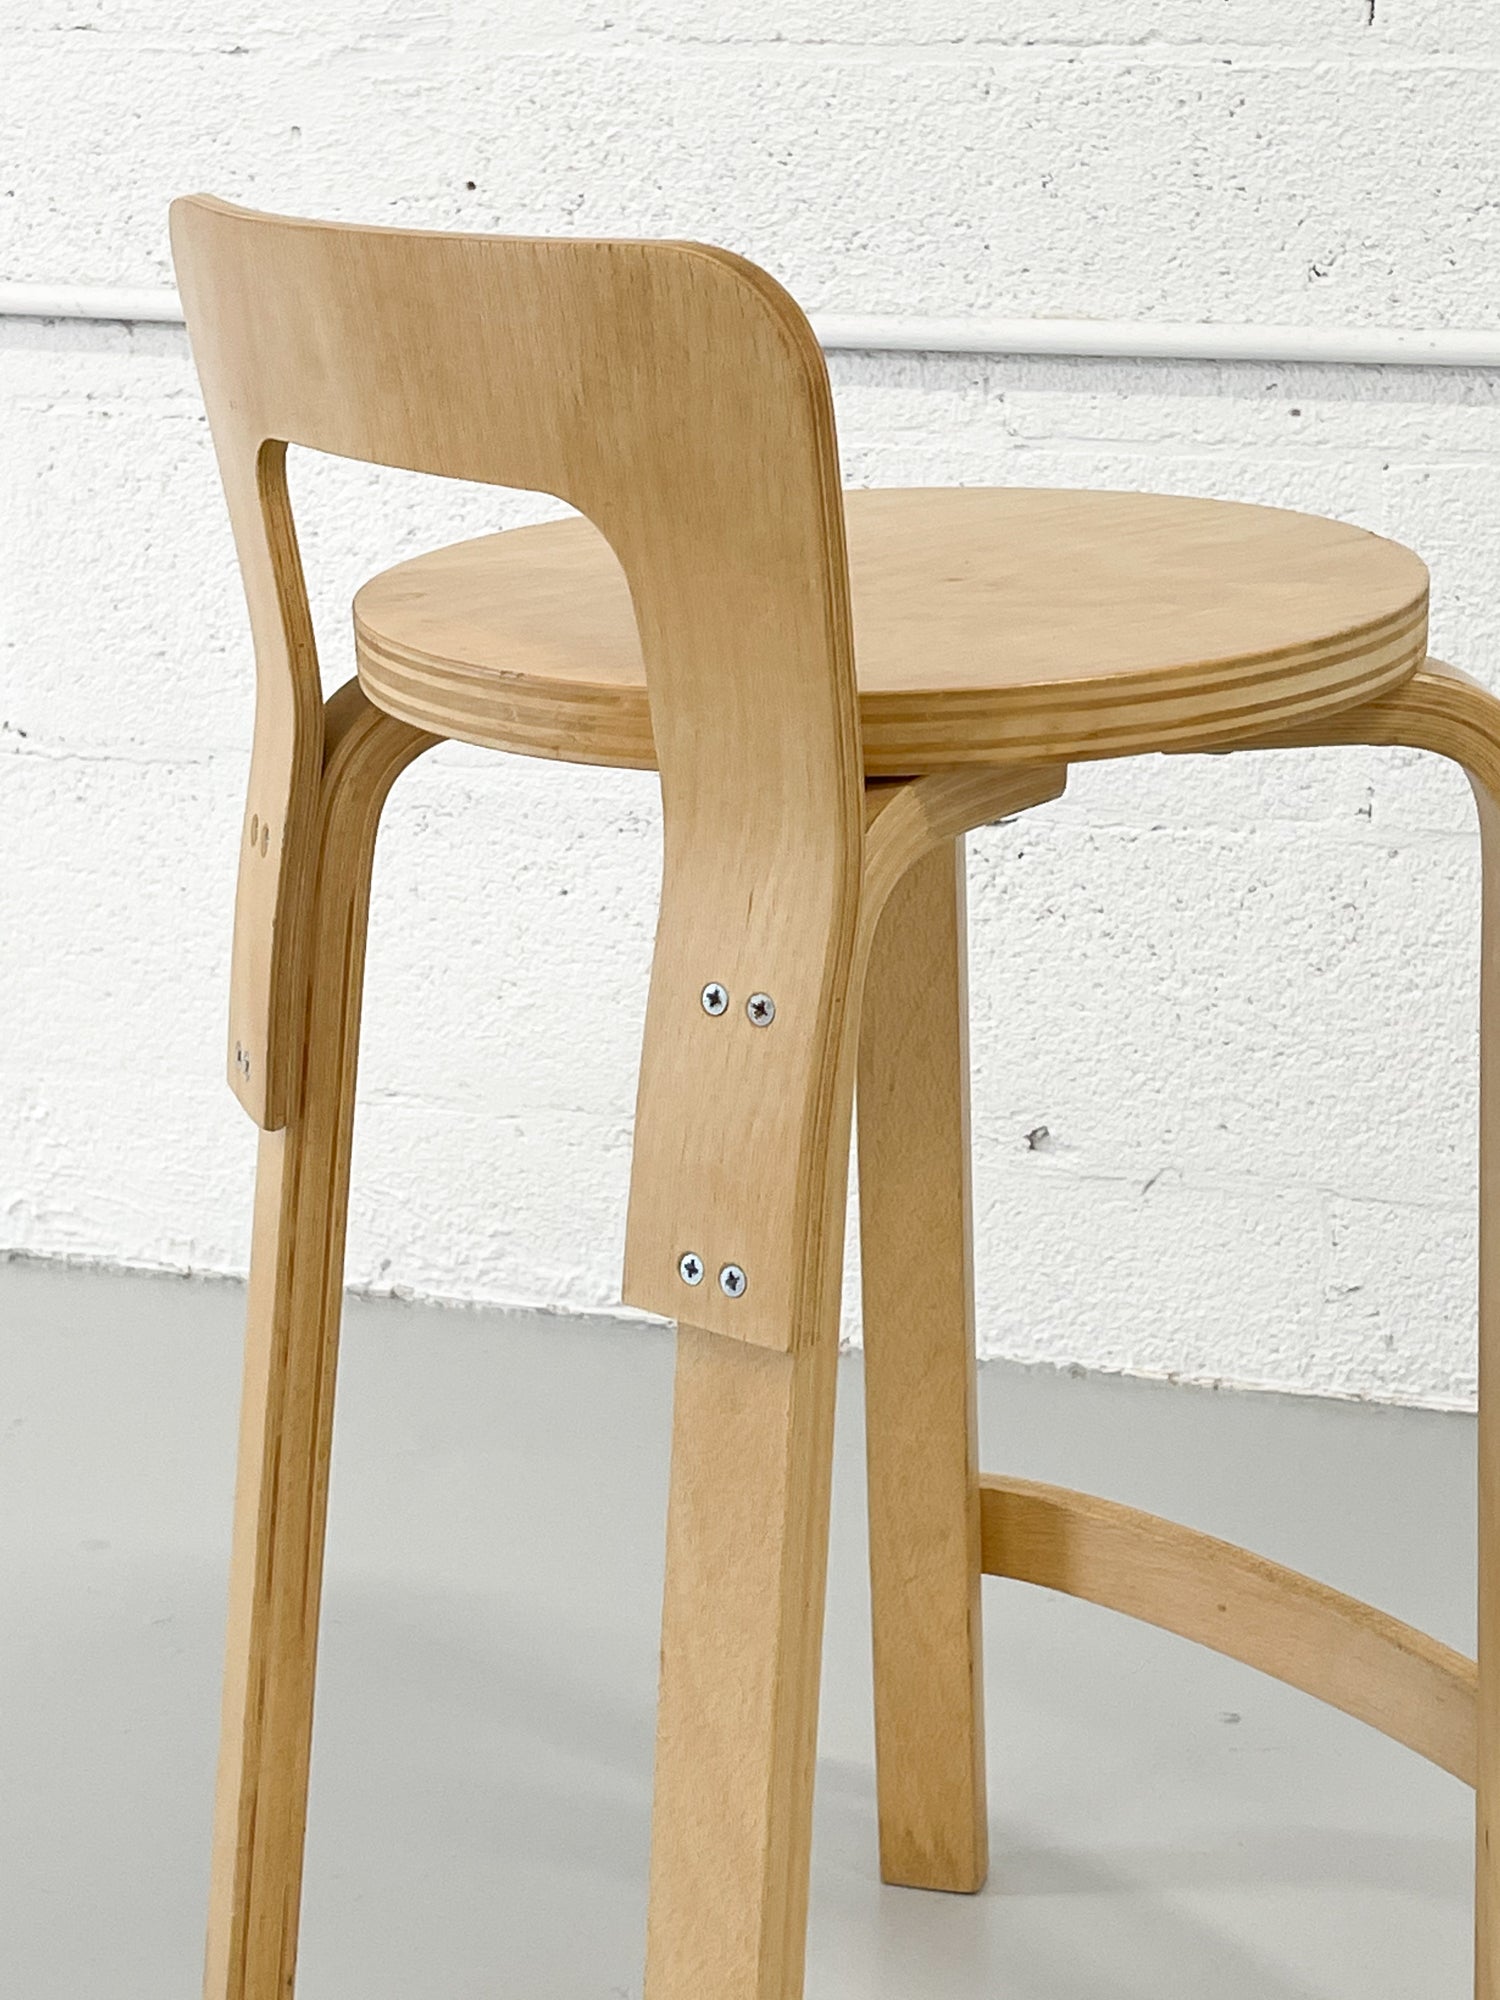 K65 High Chair by Alvar Aalto for Artek